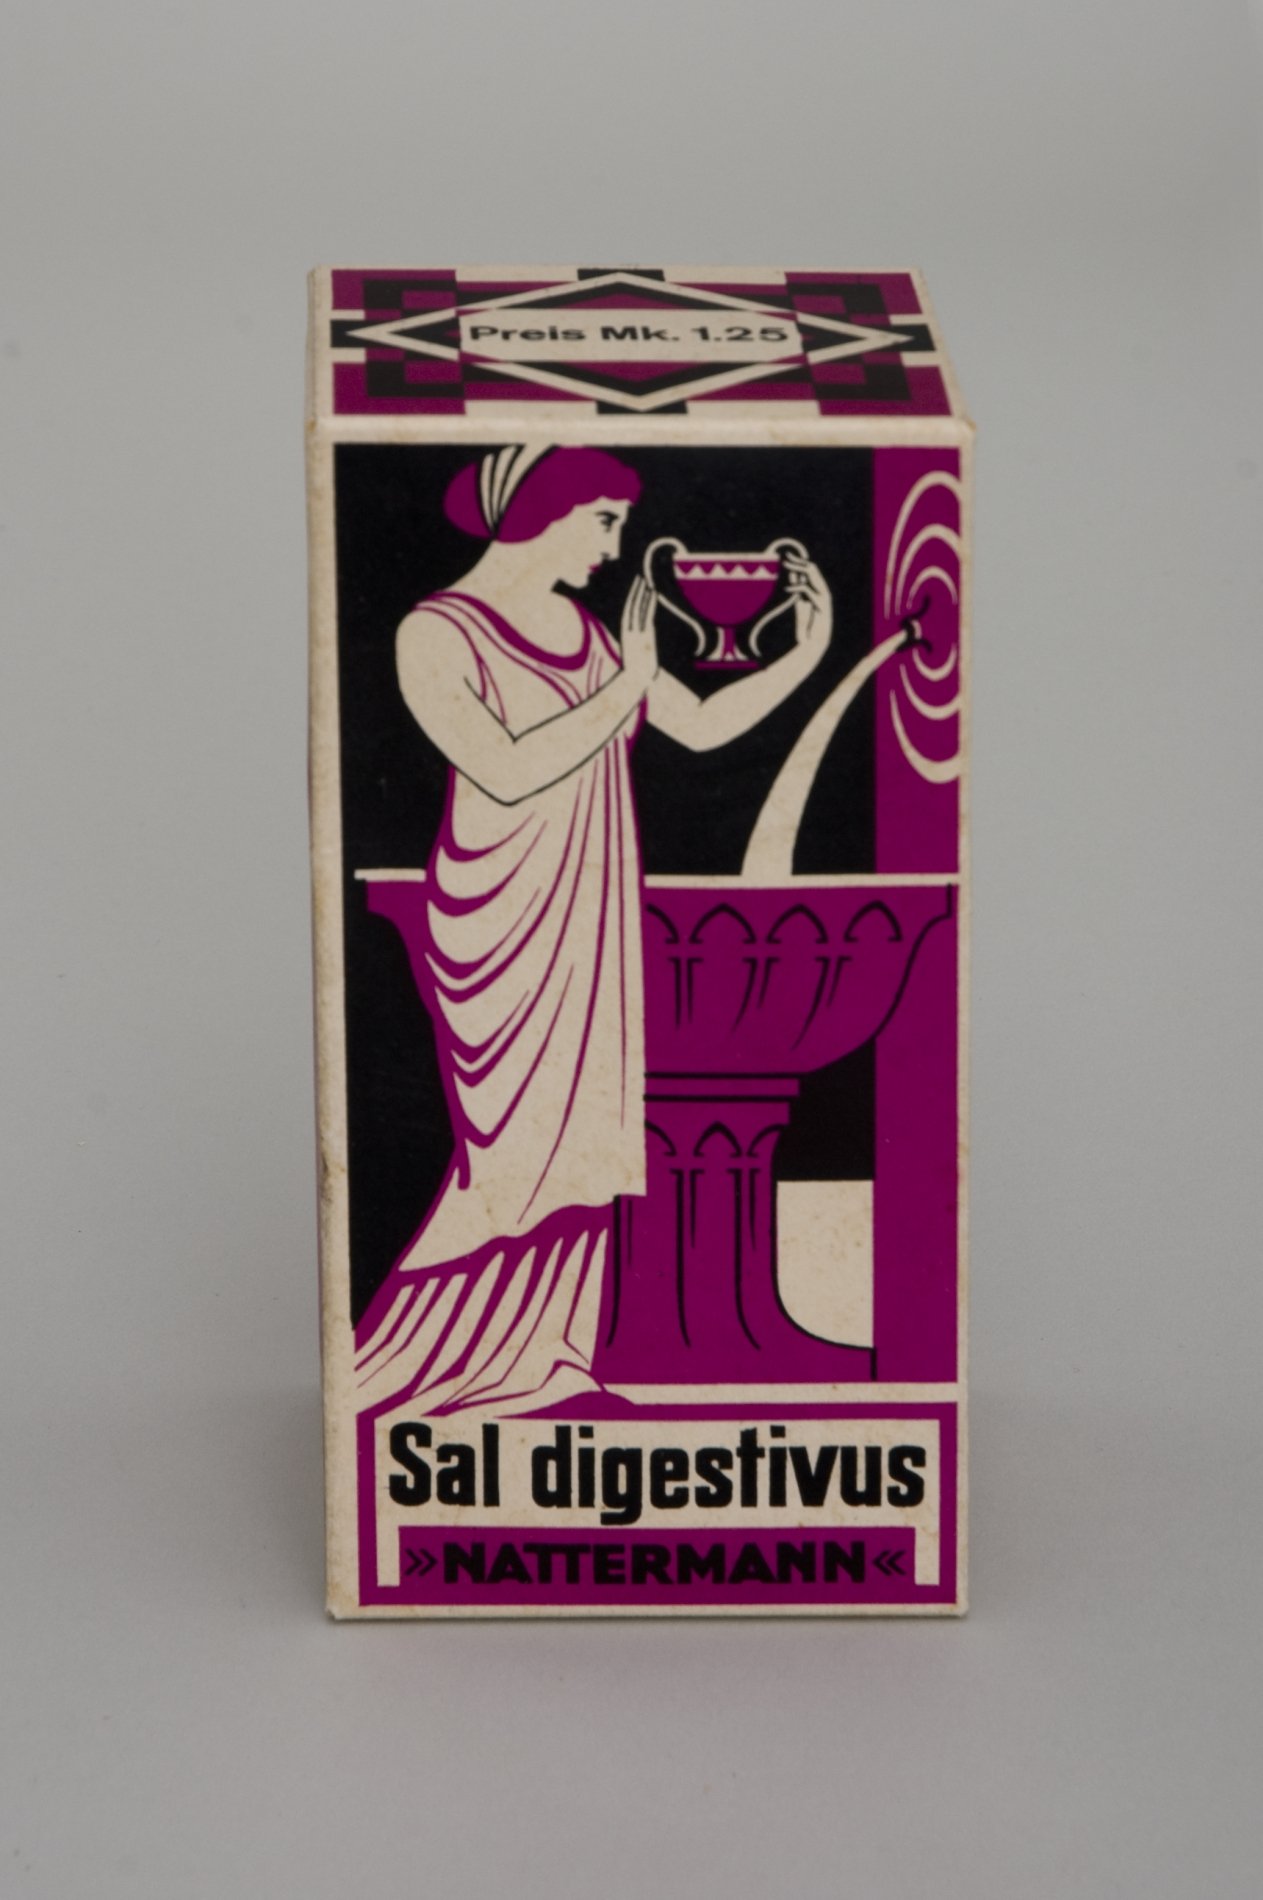 Packung "Künstliches Brunnensalz - Sal digestivus" von "A. Nattermann" (Stiftung Domäne Dahlem - Landgut und Museum, Weiternutzung nur mit Genehmigung des Museums CC BY-NC-SA)